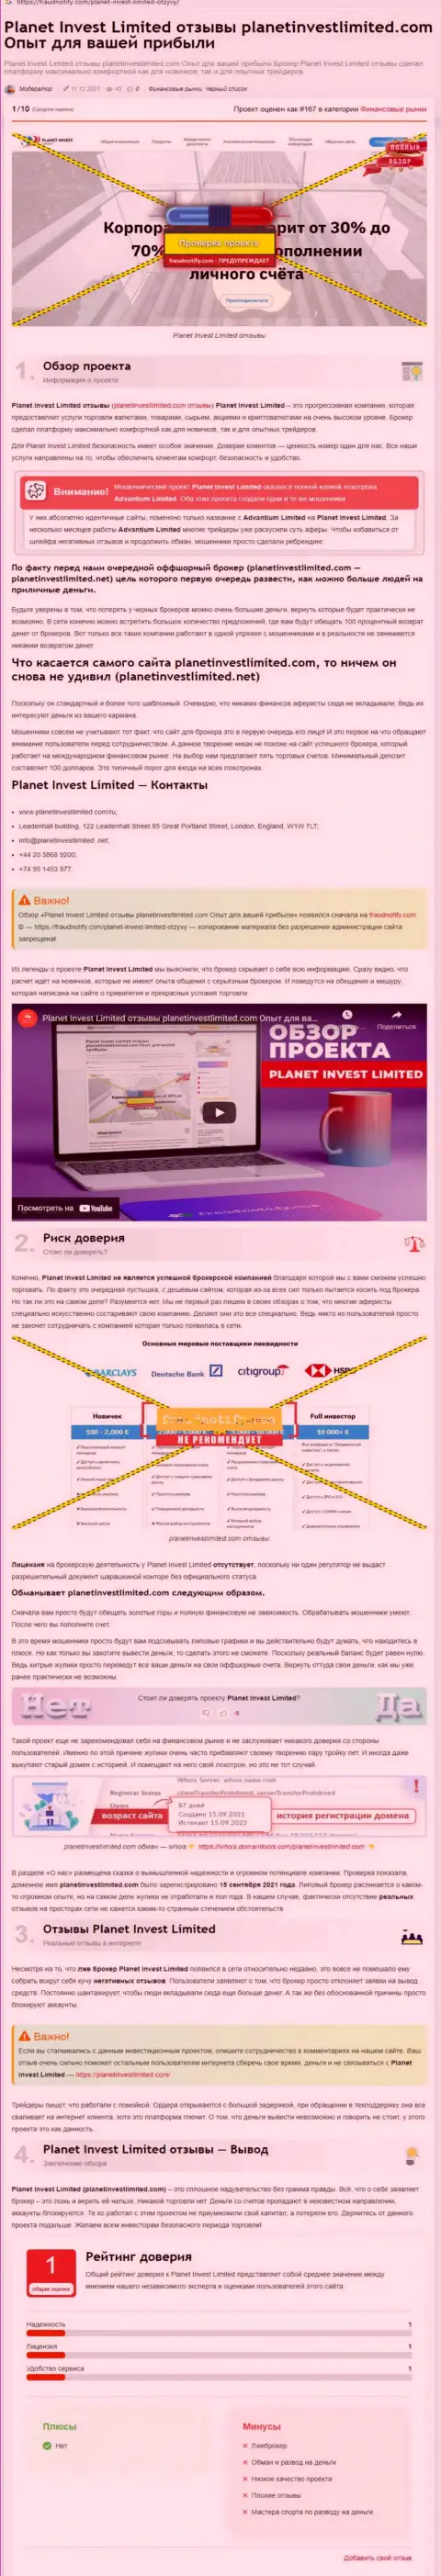 Обзор конторы Planet Invest Limited, зарекомендовавшей себя, как internet-мошенника